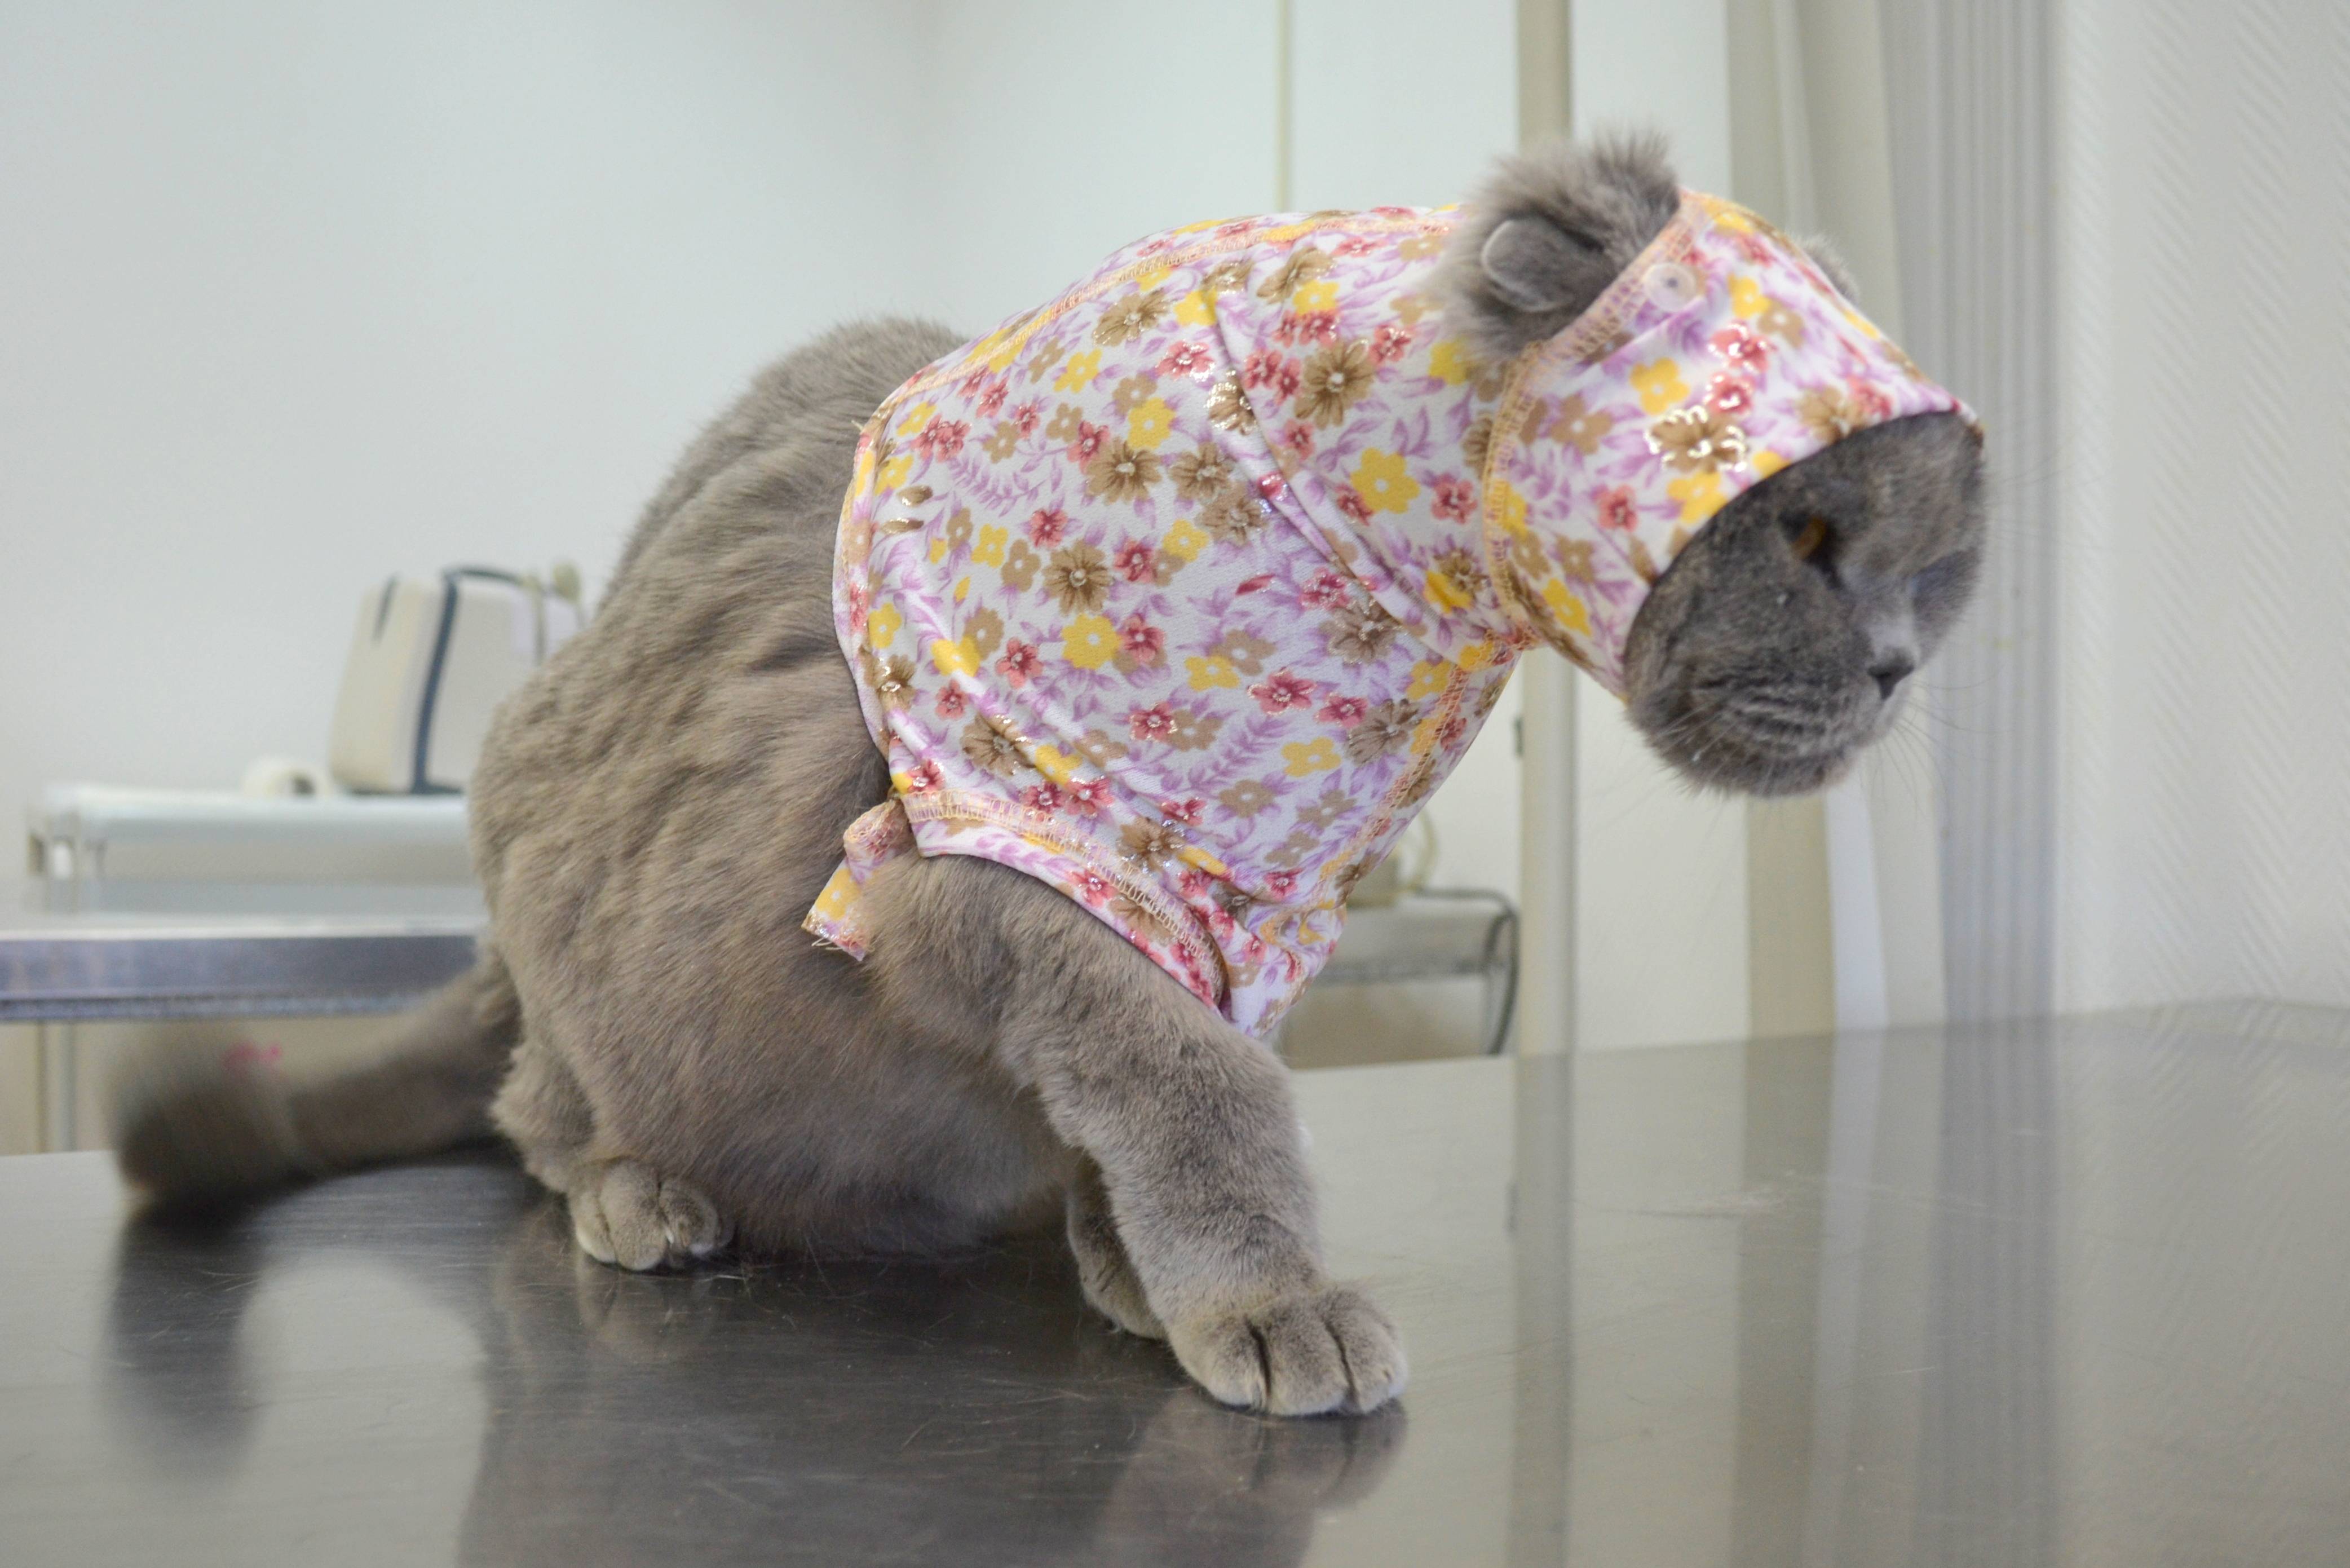 Попона для кошки после стерилизации: из колготок, носков, как сшить своими руками, как надеть и завязать попону